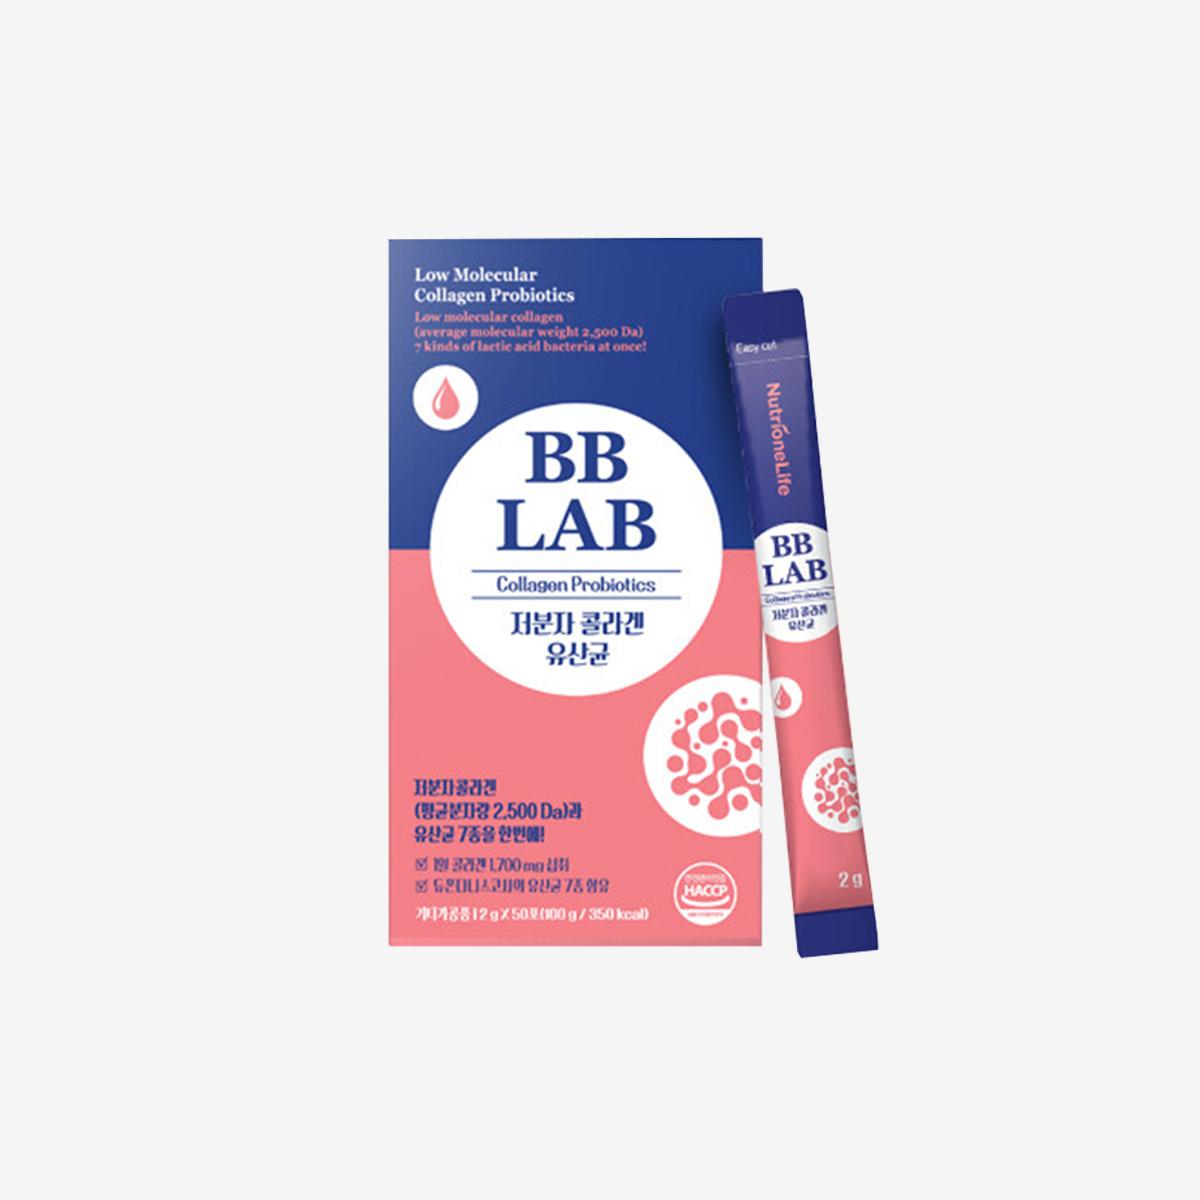 《少女時代 潤娥代言》BB LAB低分子膠原蛋白益生菌（50包入）